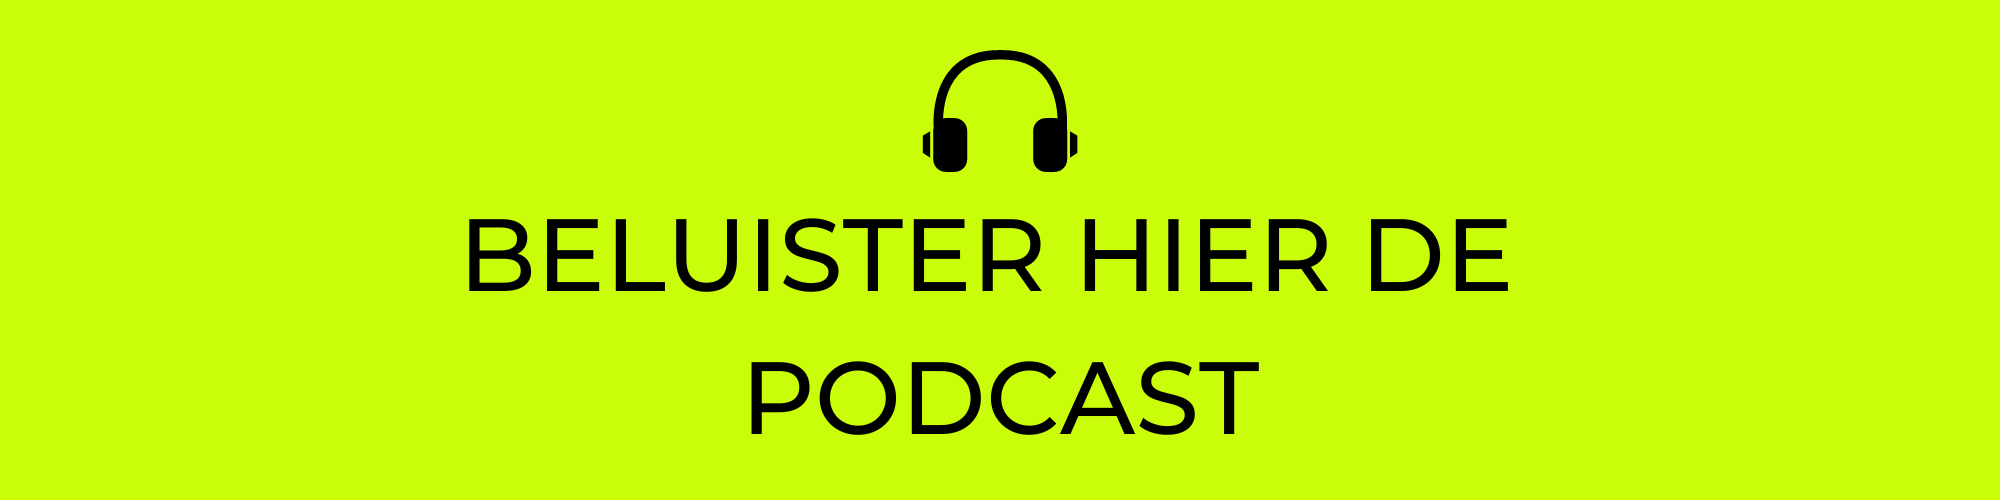 katrien van Overbeek Podcast